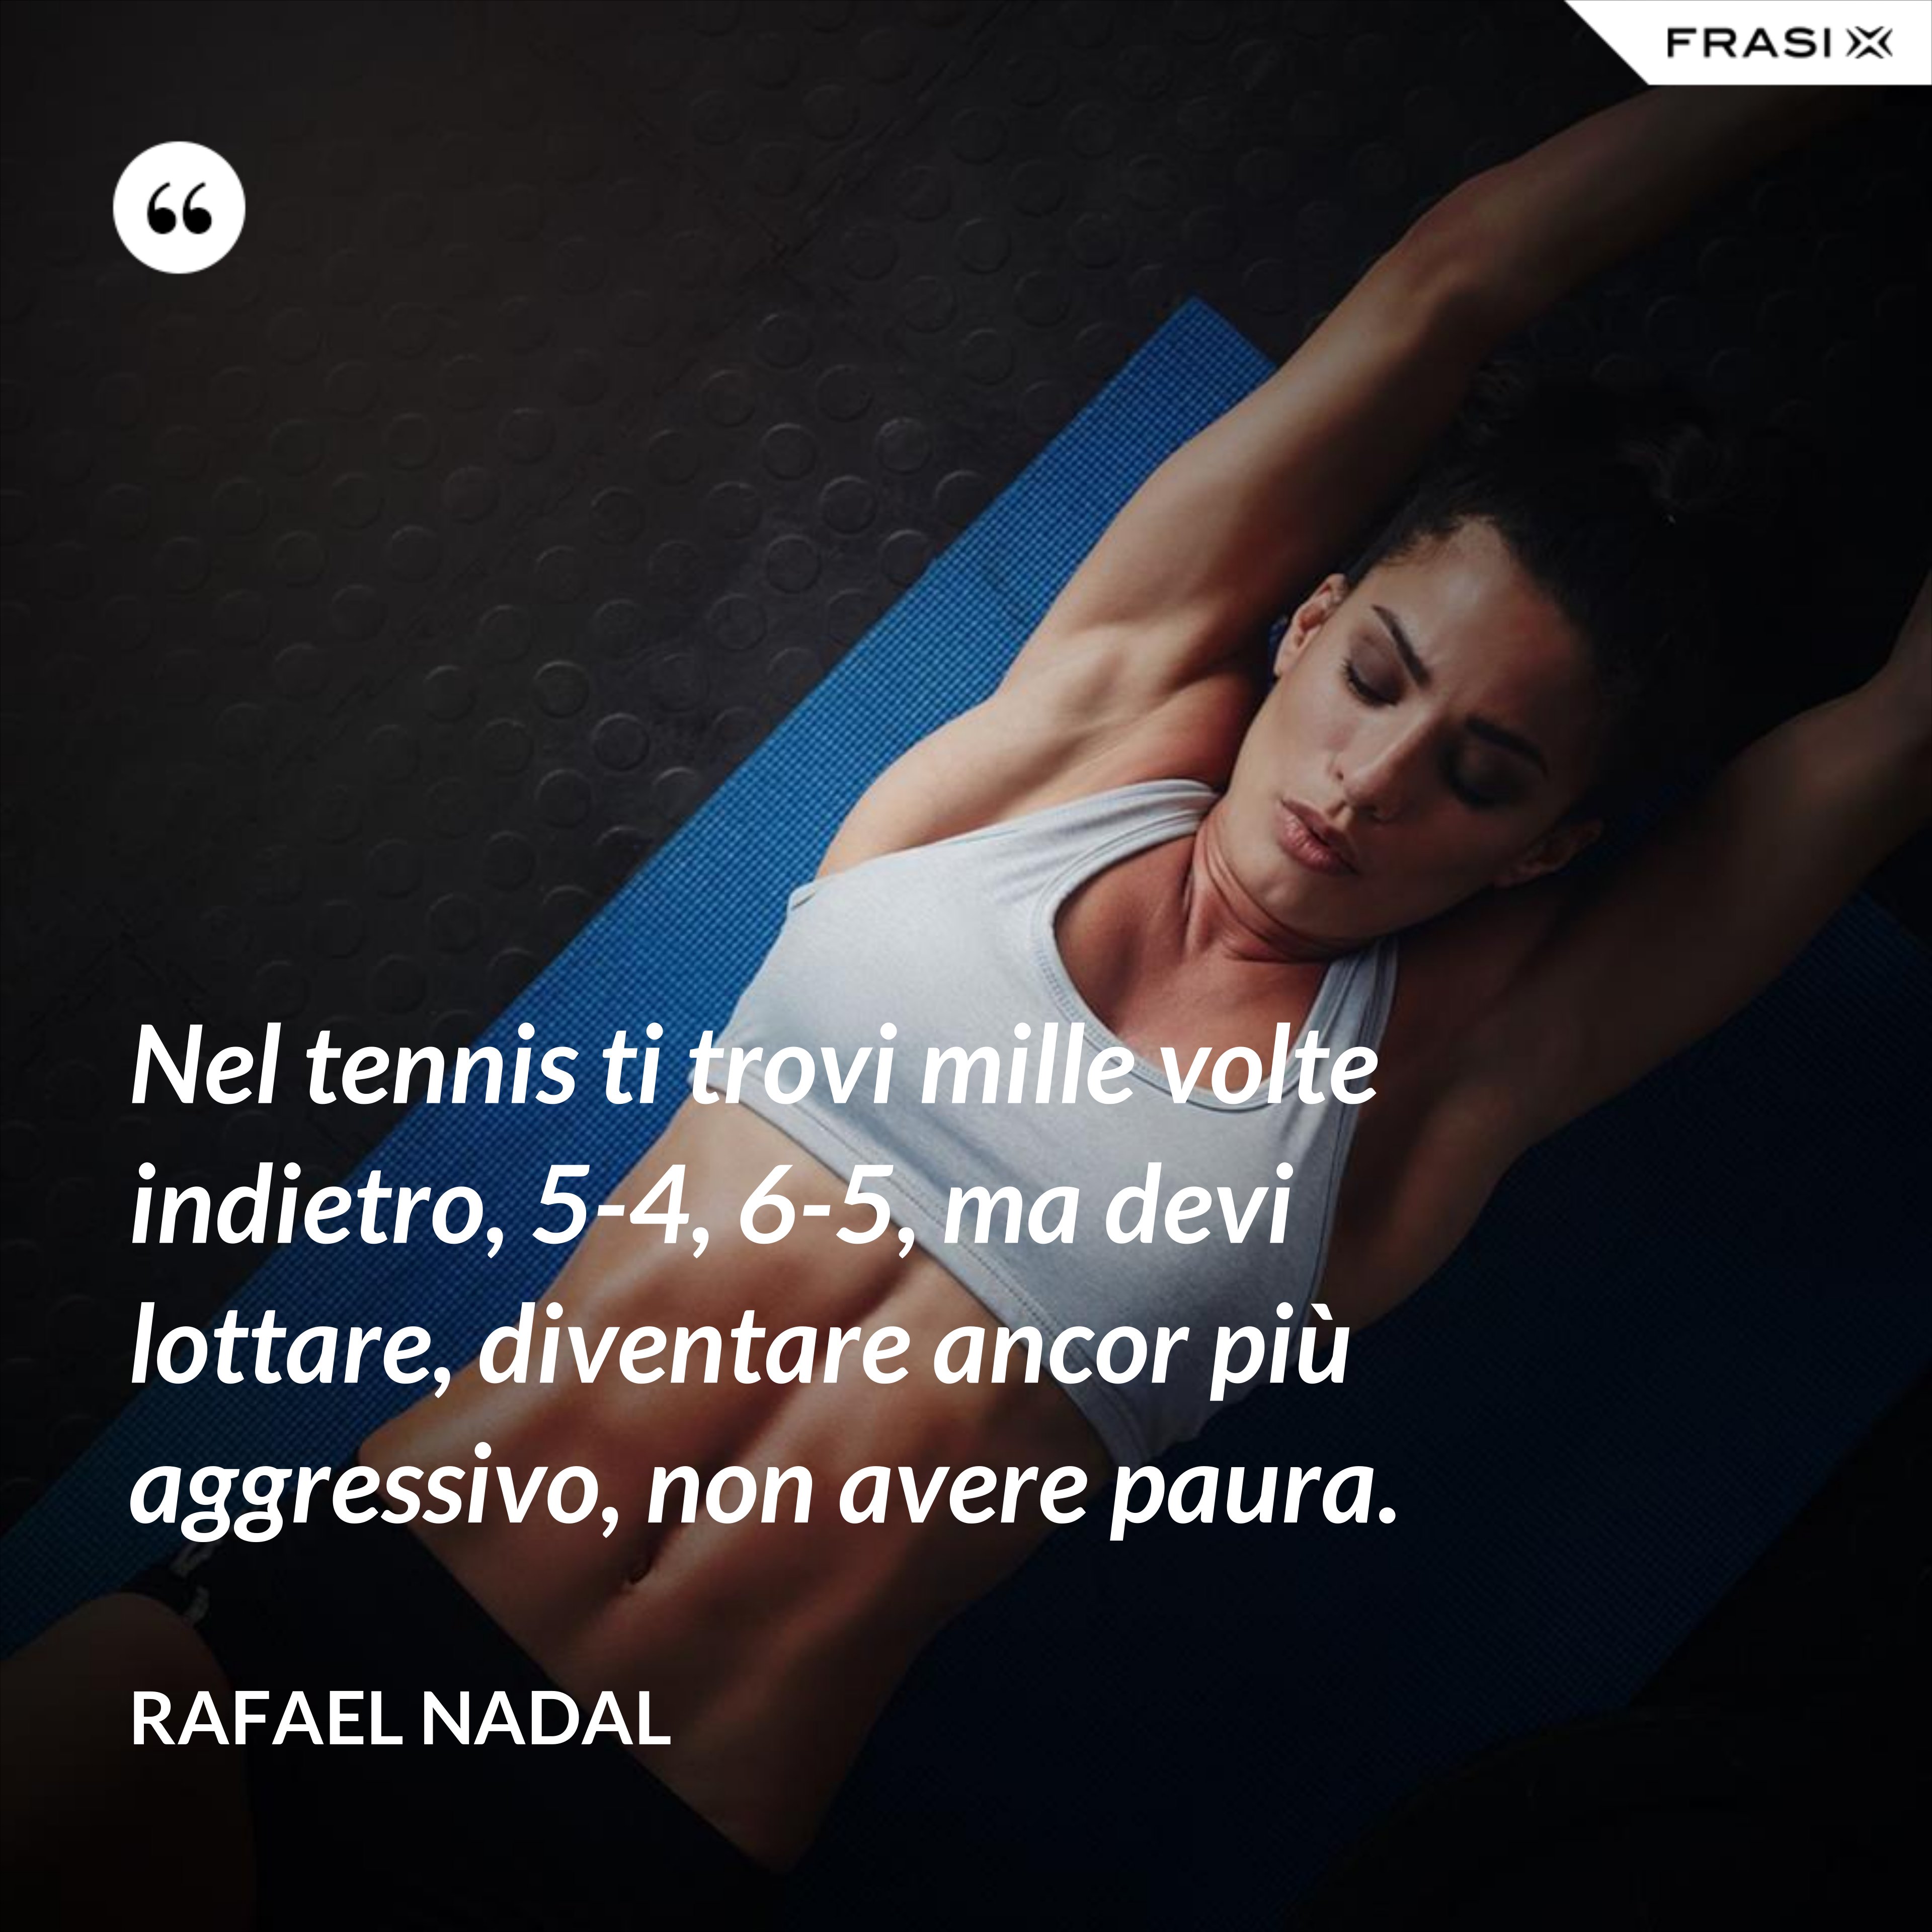 Nel tennis ti trovi mille volte indietro, 5-4, 6-5, ma devi lottare, diventare ancor più aggressivo, non avere paura. - Rafael Nadal